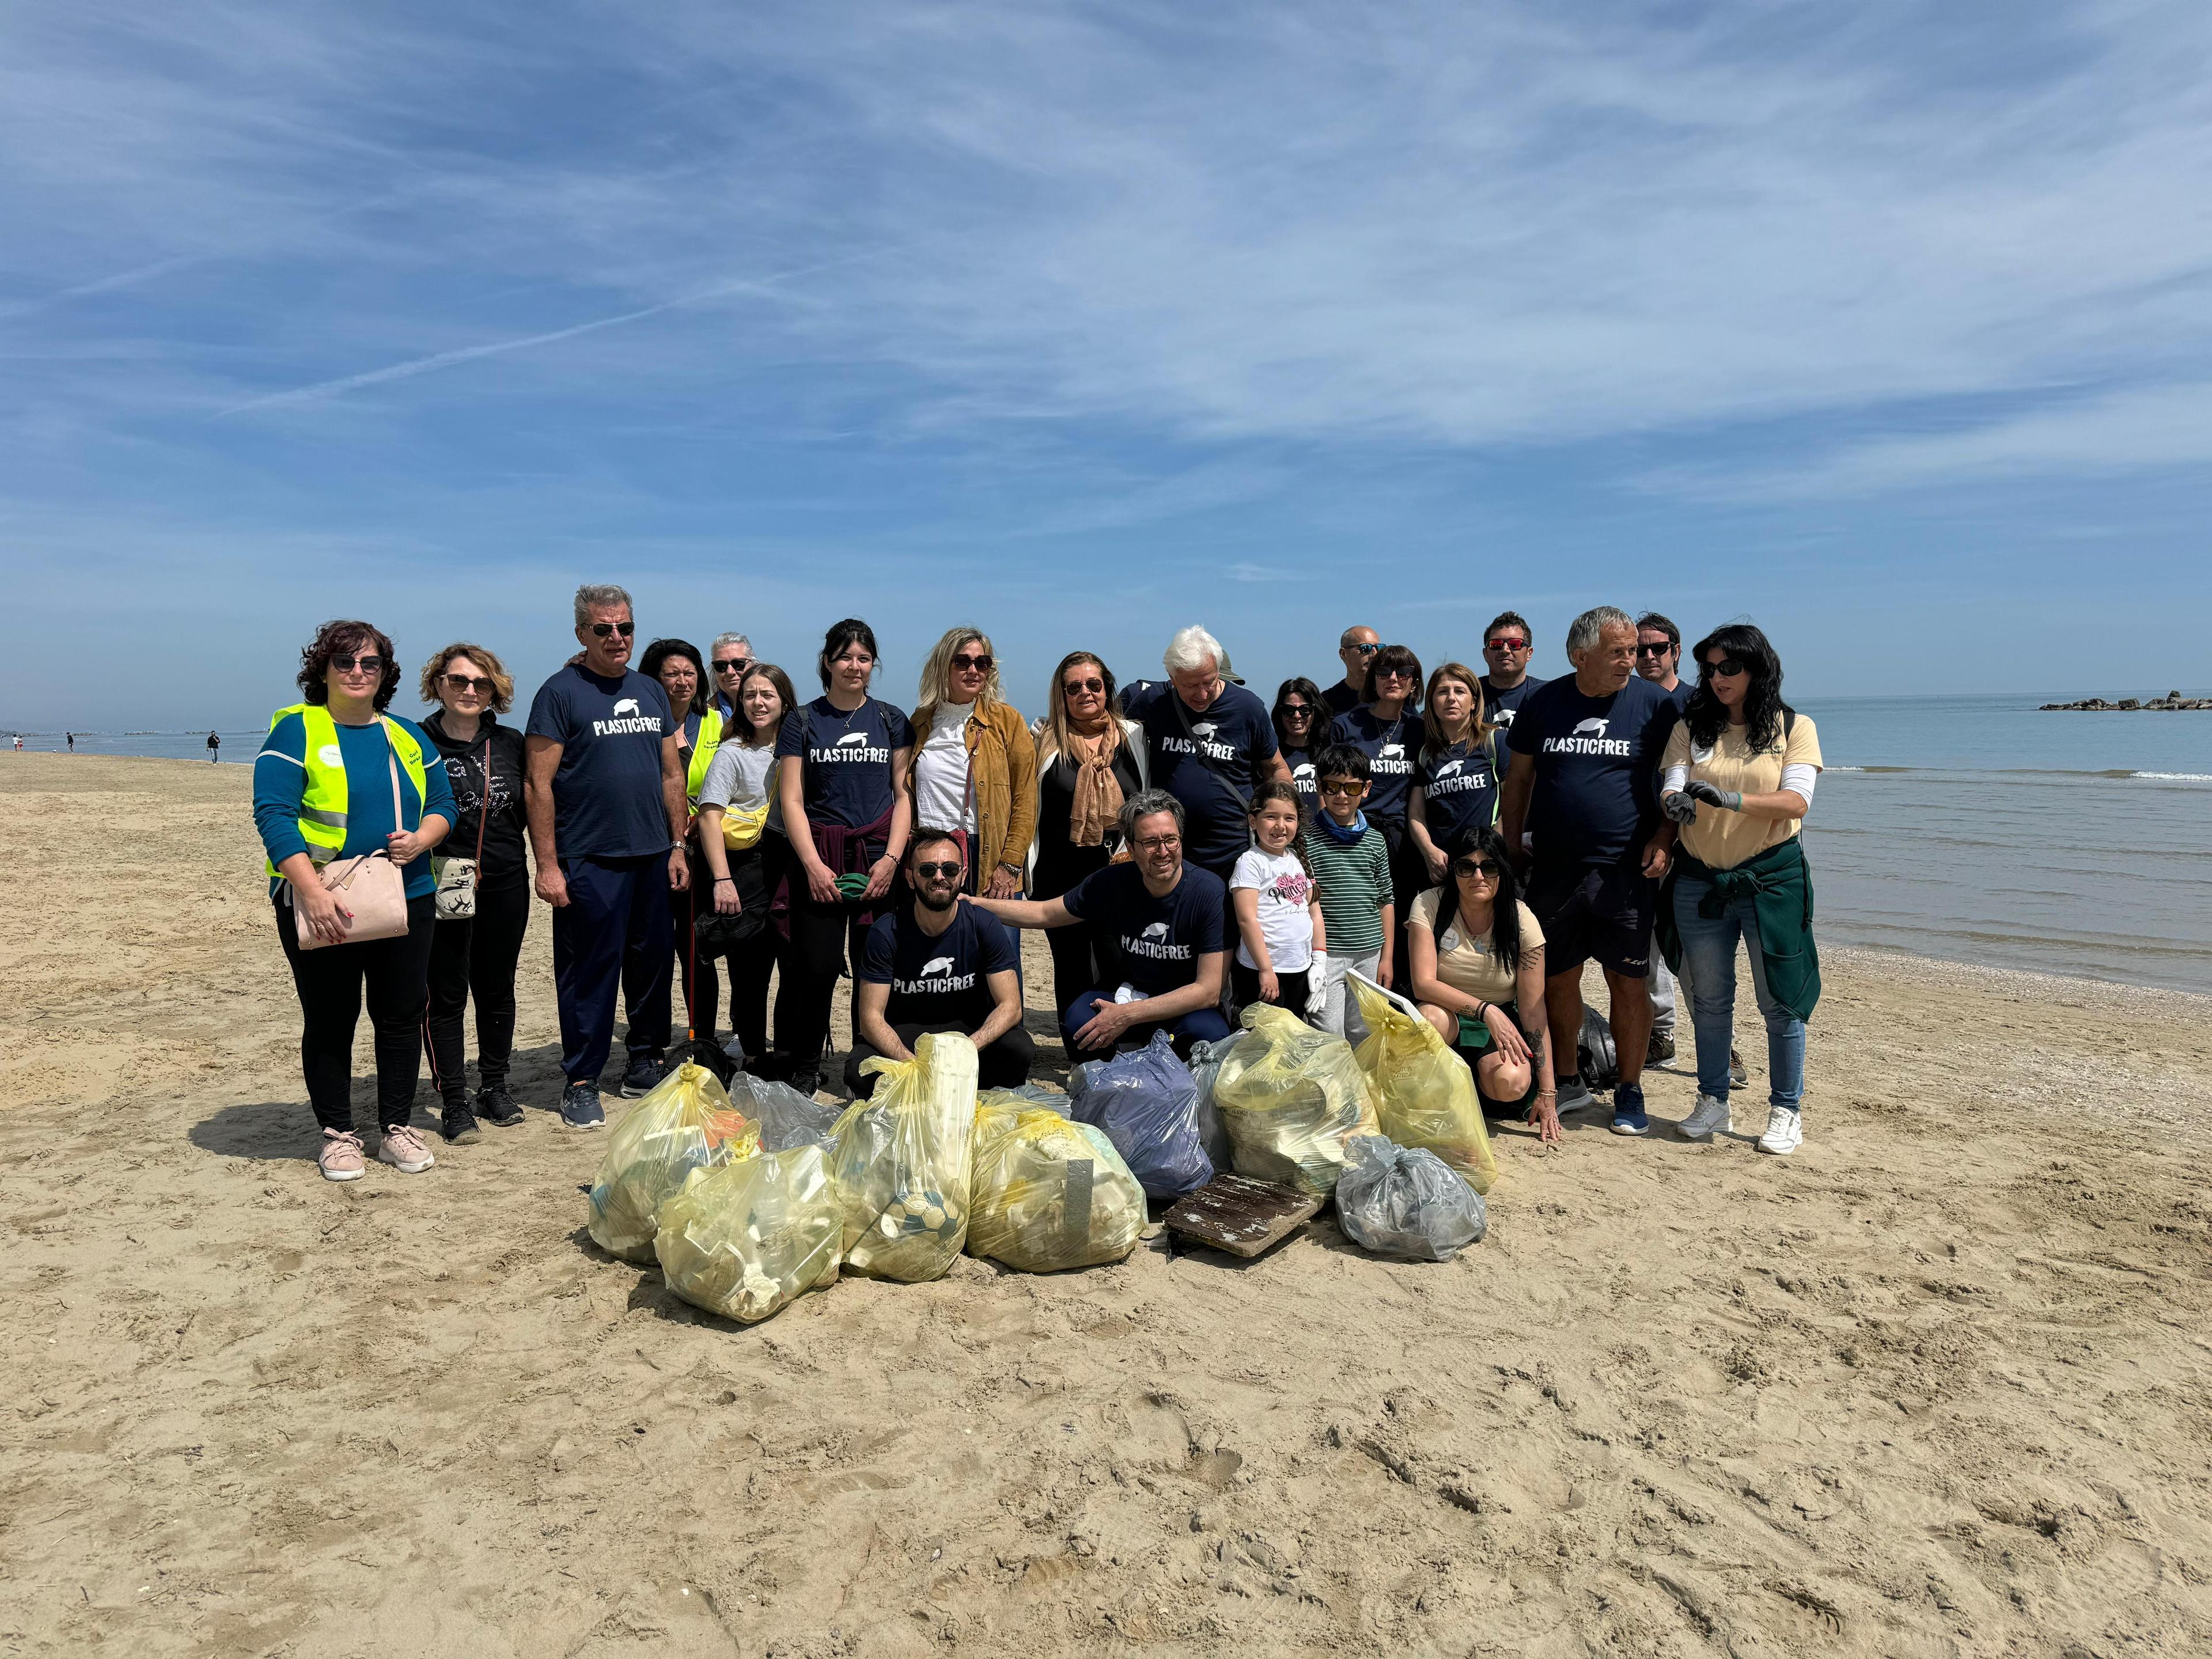 A Roseto degli Abruzzi (TE), firmato Protocollo d'Intesa con Plastic Free Onlus dopo una passeggiata ecologica sulla spiaggia